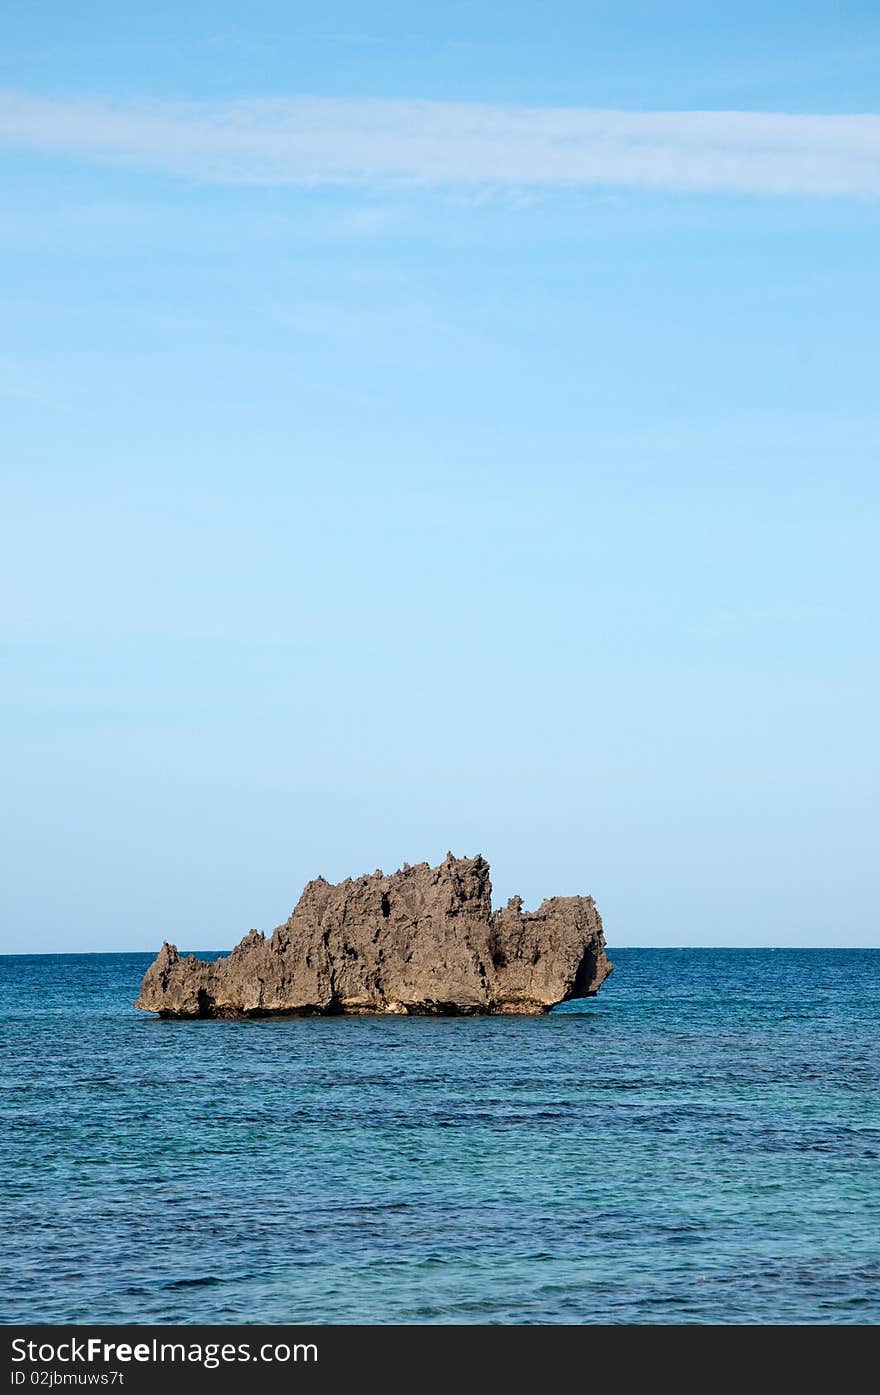 Scenic view of small rocky island in sea.